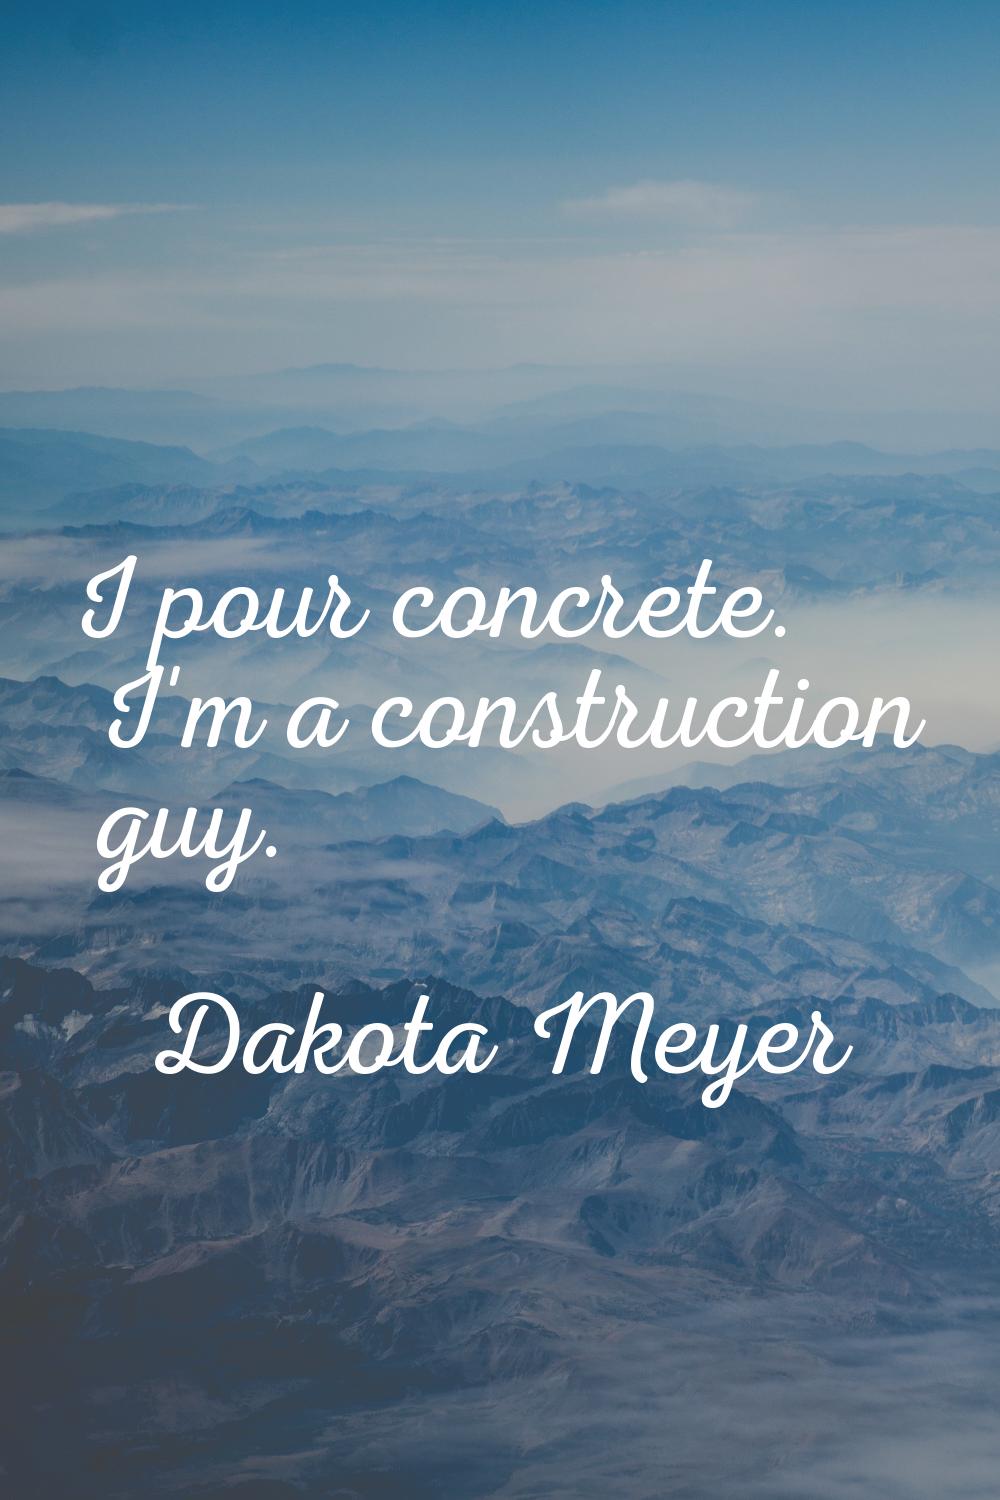 I pour concrete. I'm a construction guy.